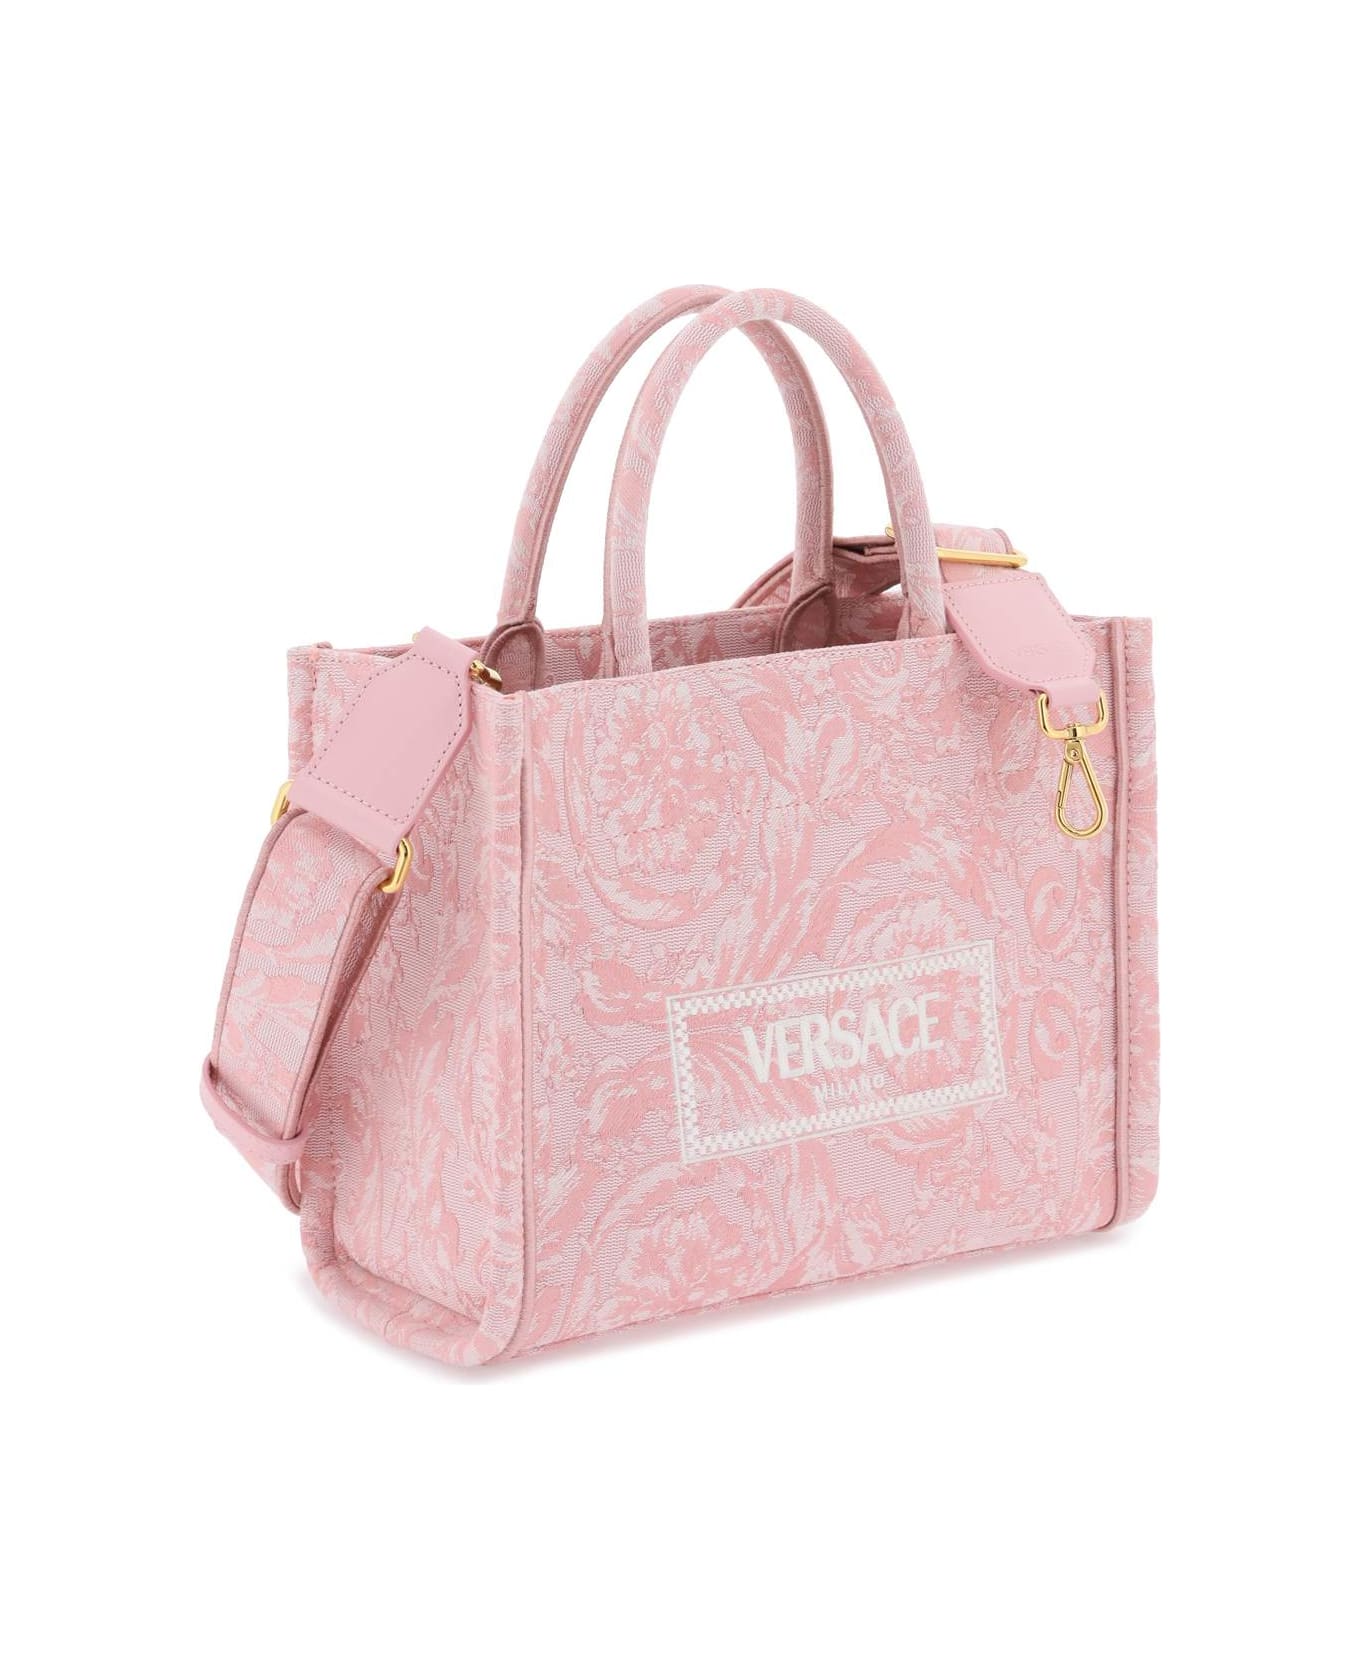 Versace Pink Woven Bag - Pink トートバッグ